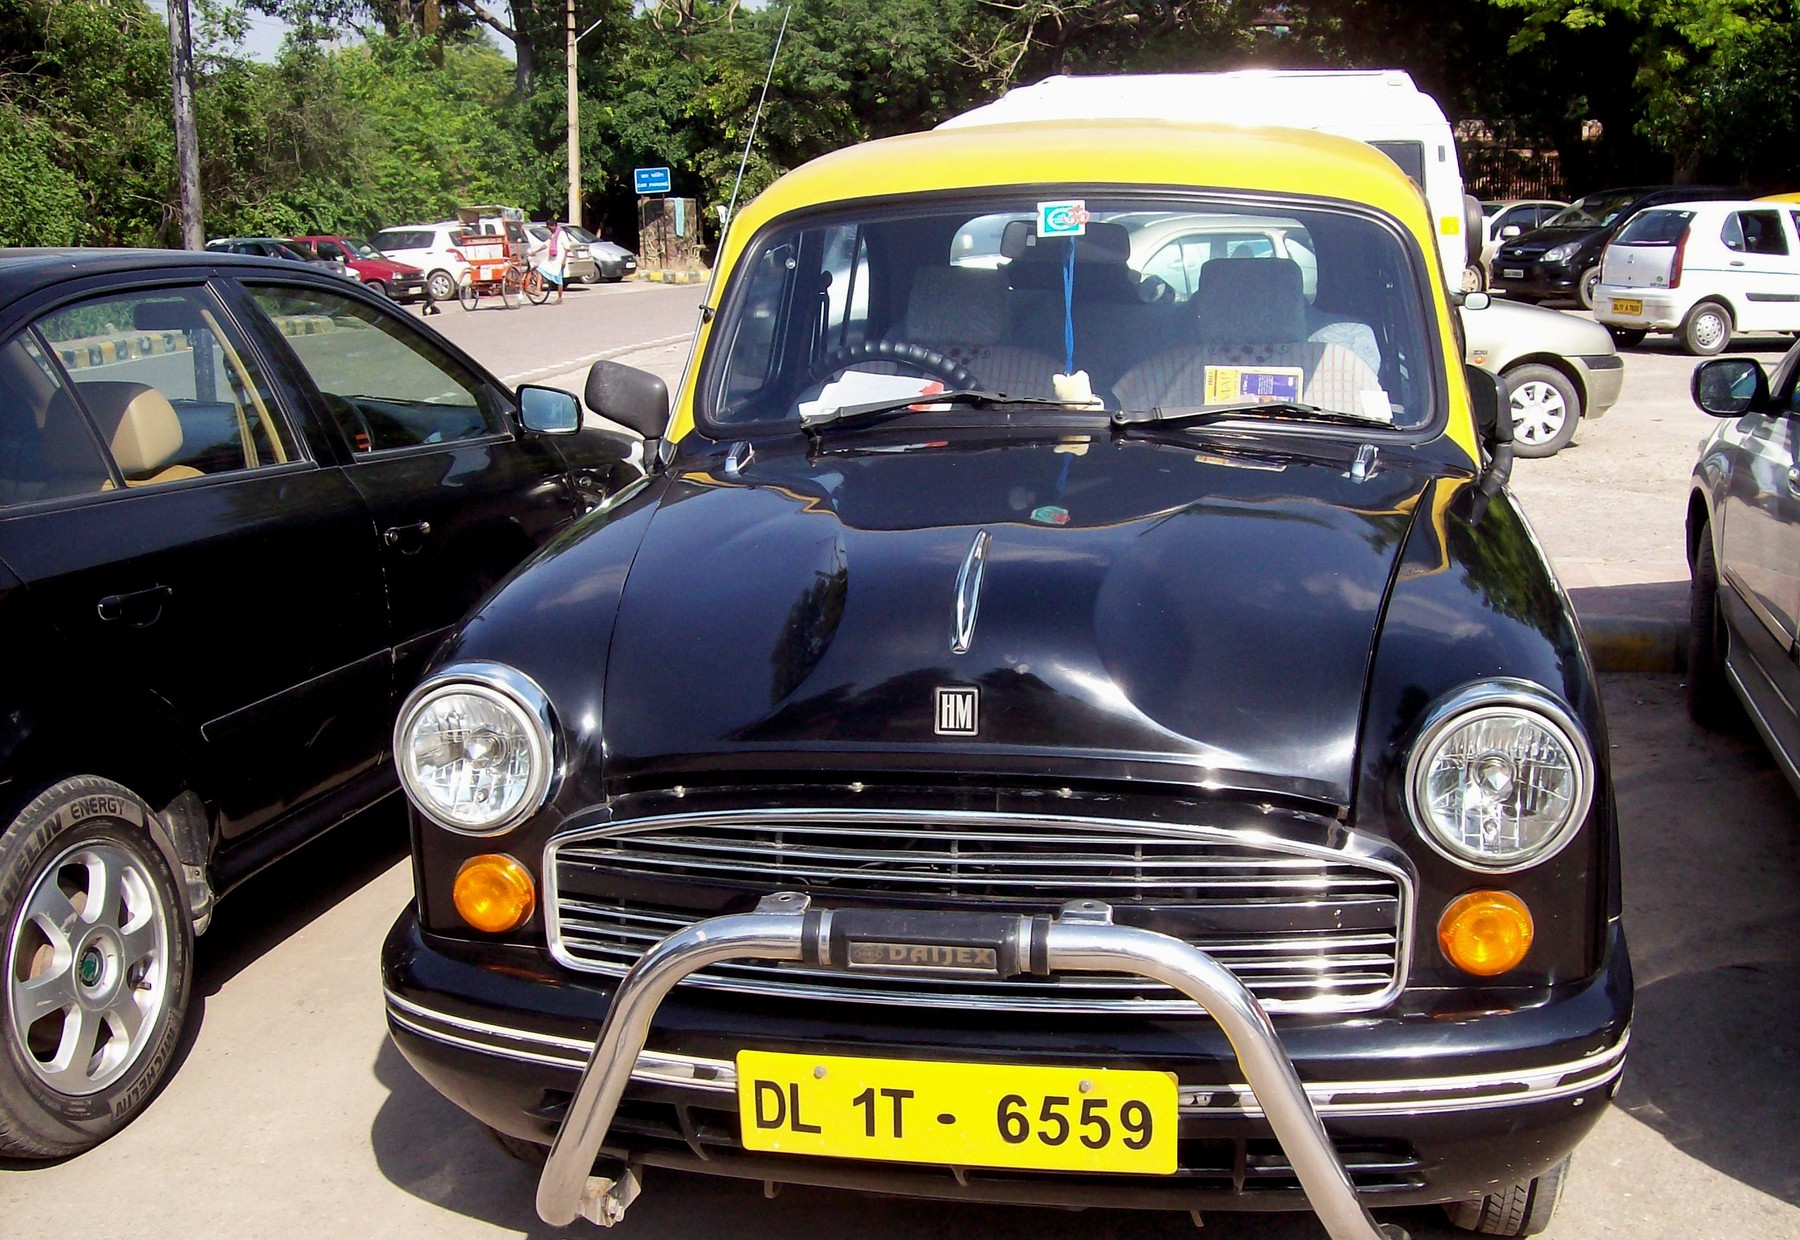 Taxi Hindustan Ambassador - Delhi